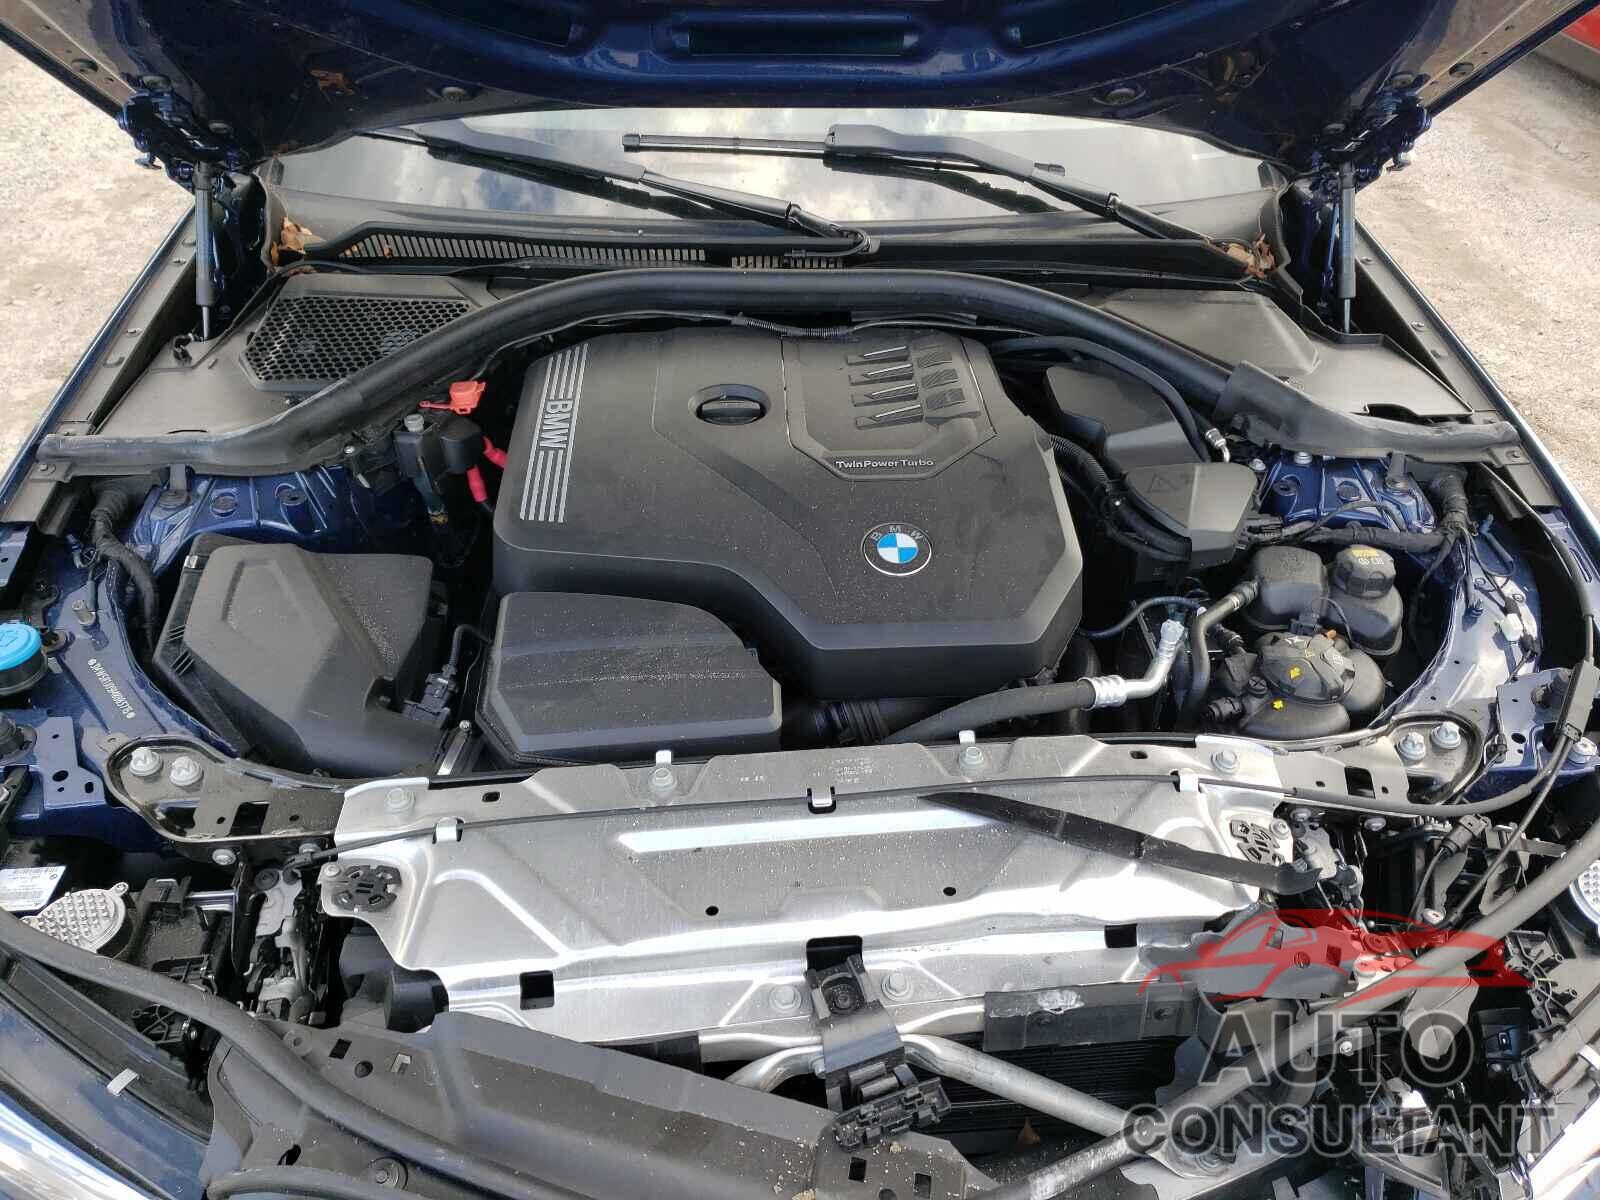 BMW 3 SERIES 2021 - 3MW5R1J09M8B83715